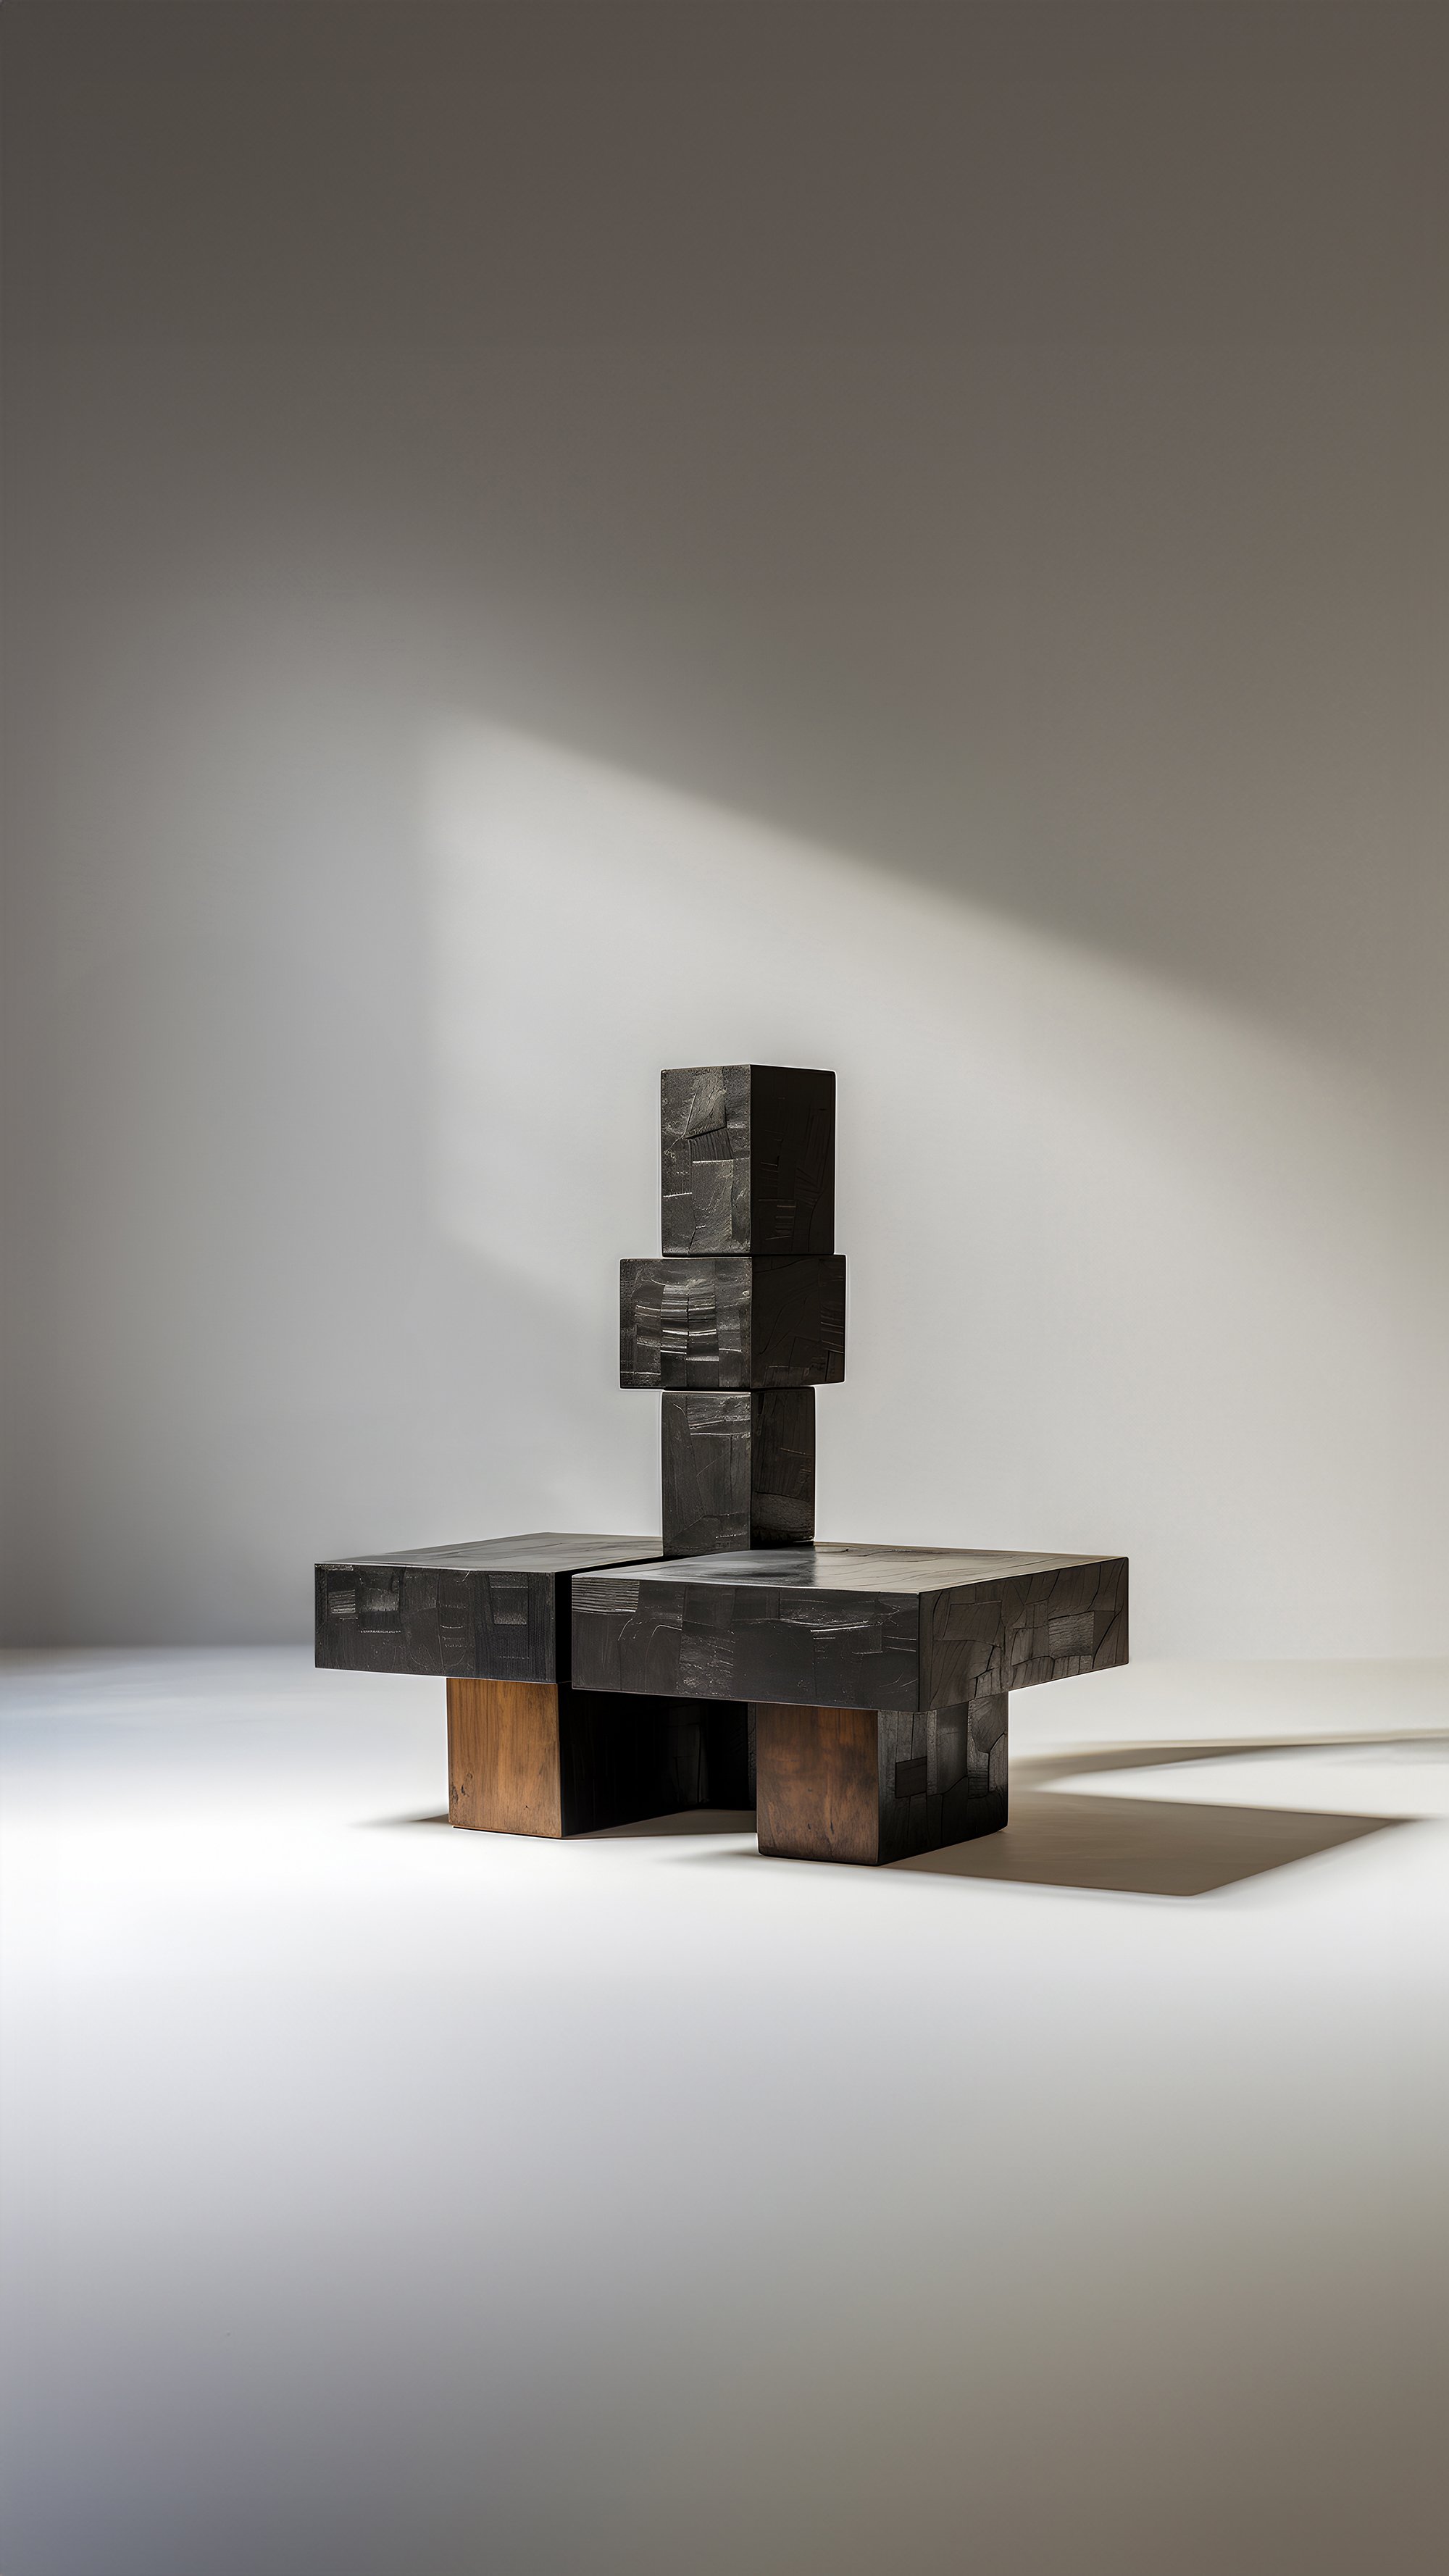 Gallery-Style Unseen Force 65 Solid Oak Table by Joel Escalona, Luxe Decor - 4.jpg